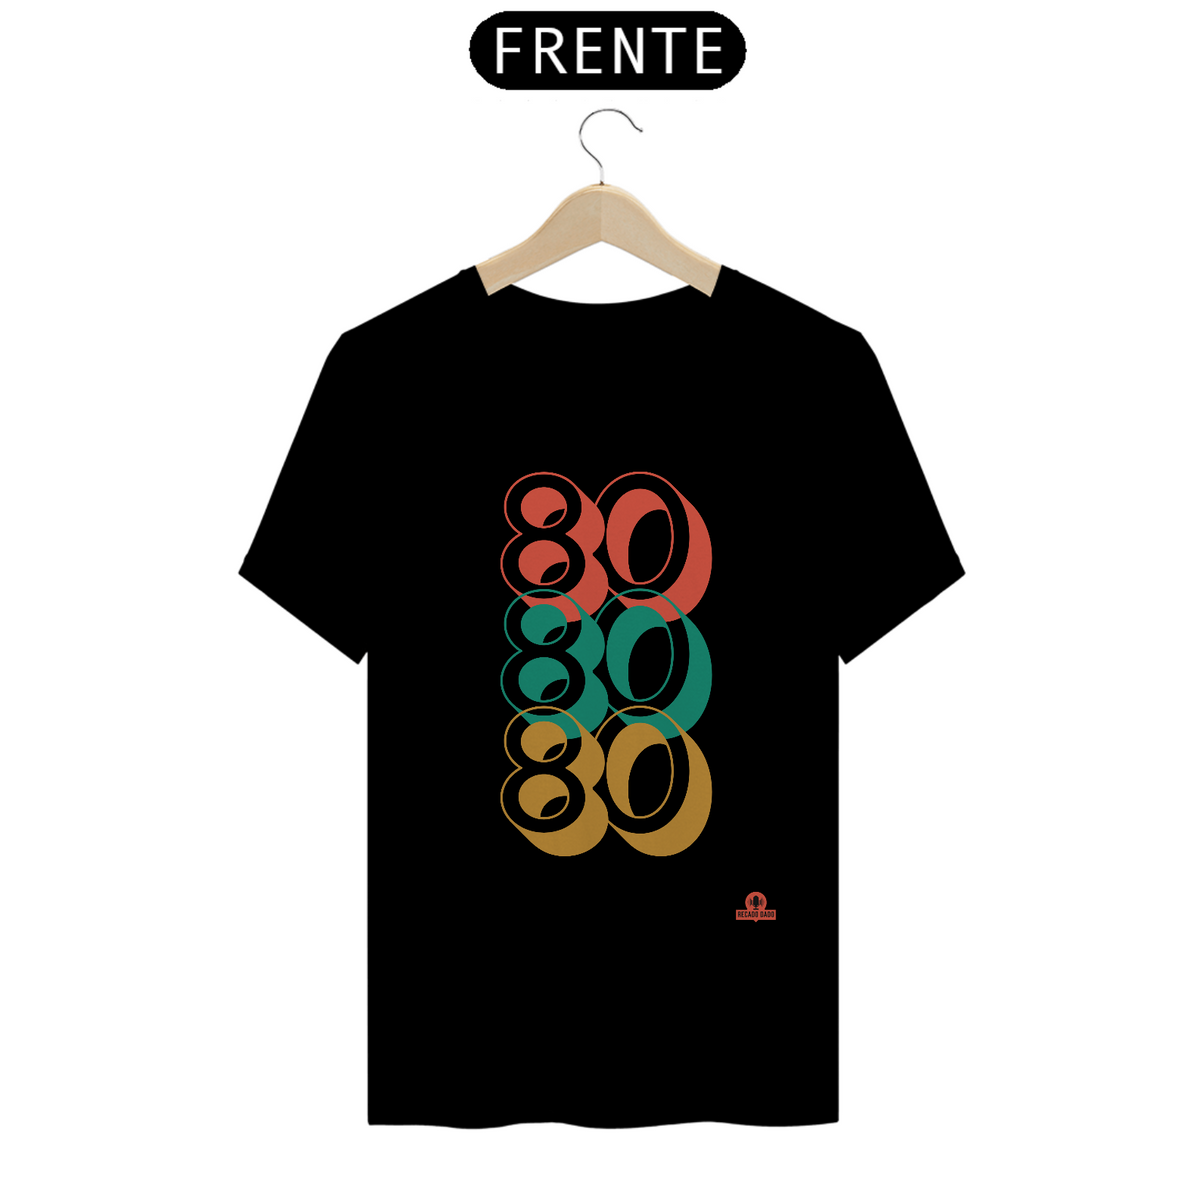 Nome do produto: Camiseta 80 Years Loved, eu amo os anos 80, em homenagem à melhor década de todos os tempos.